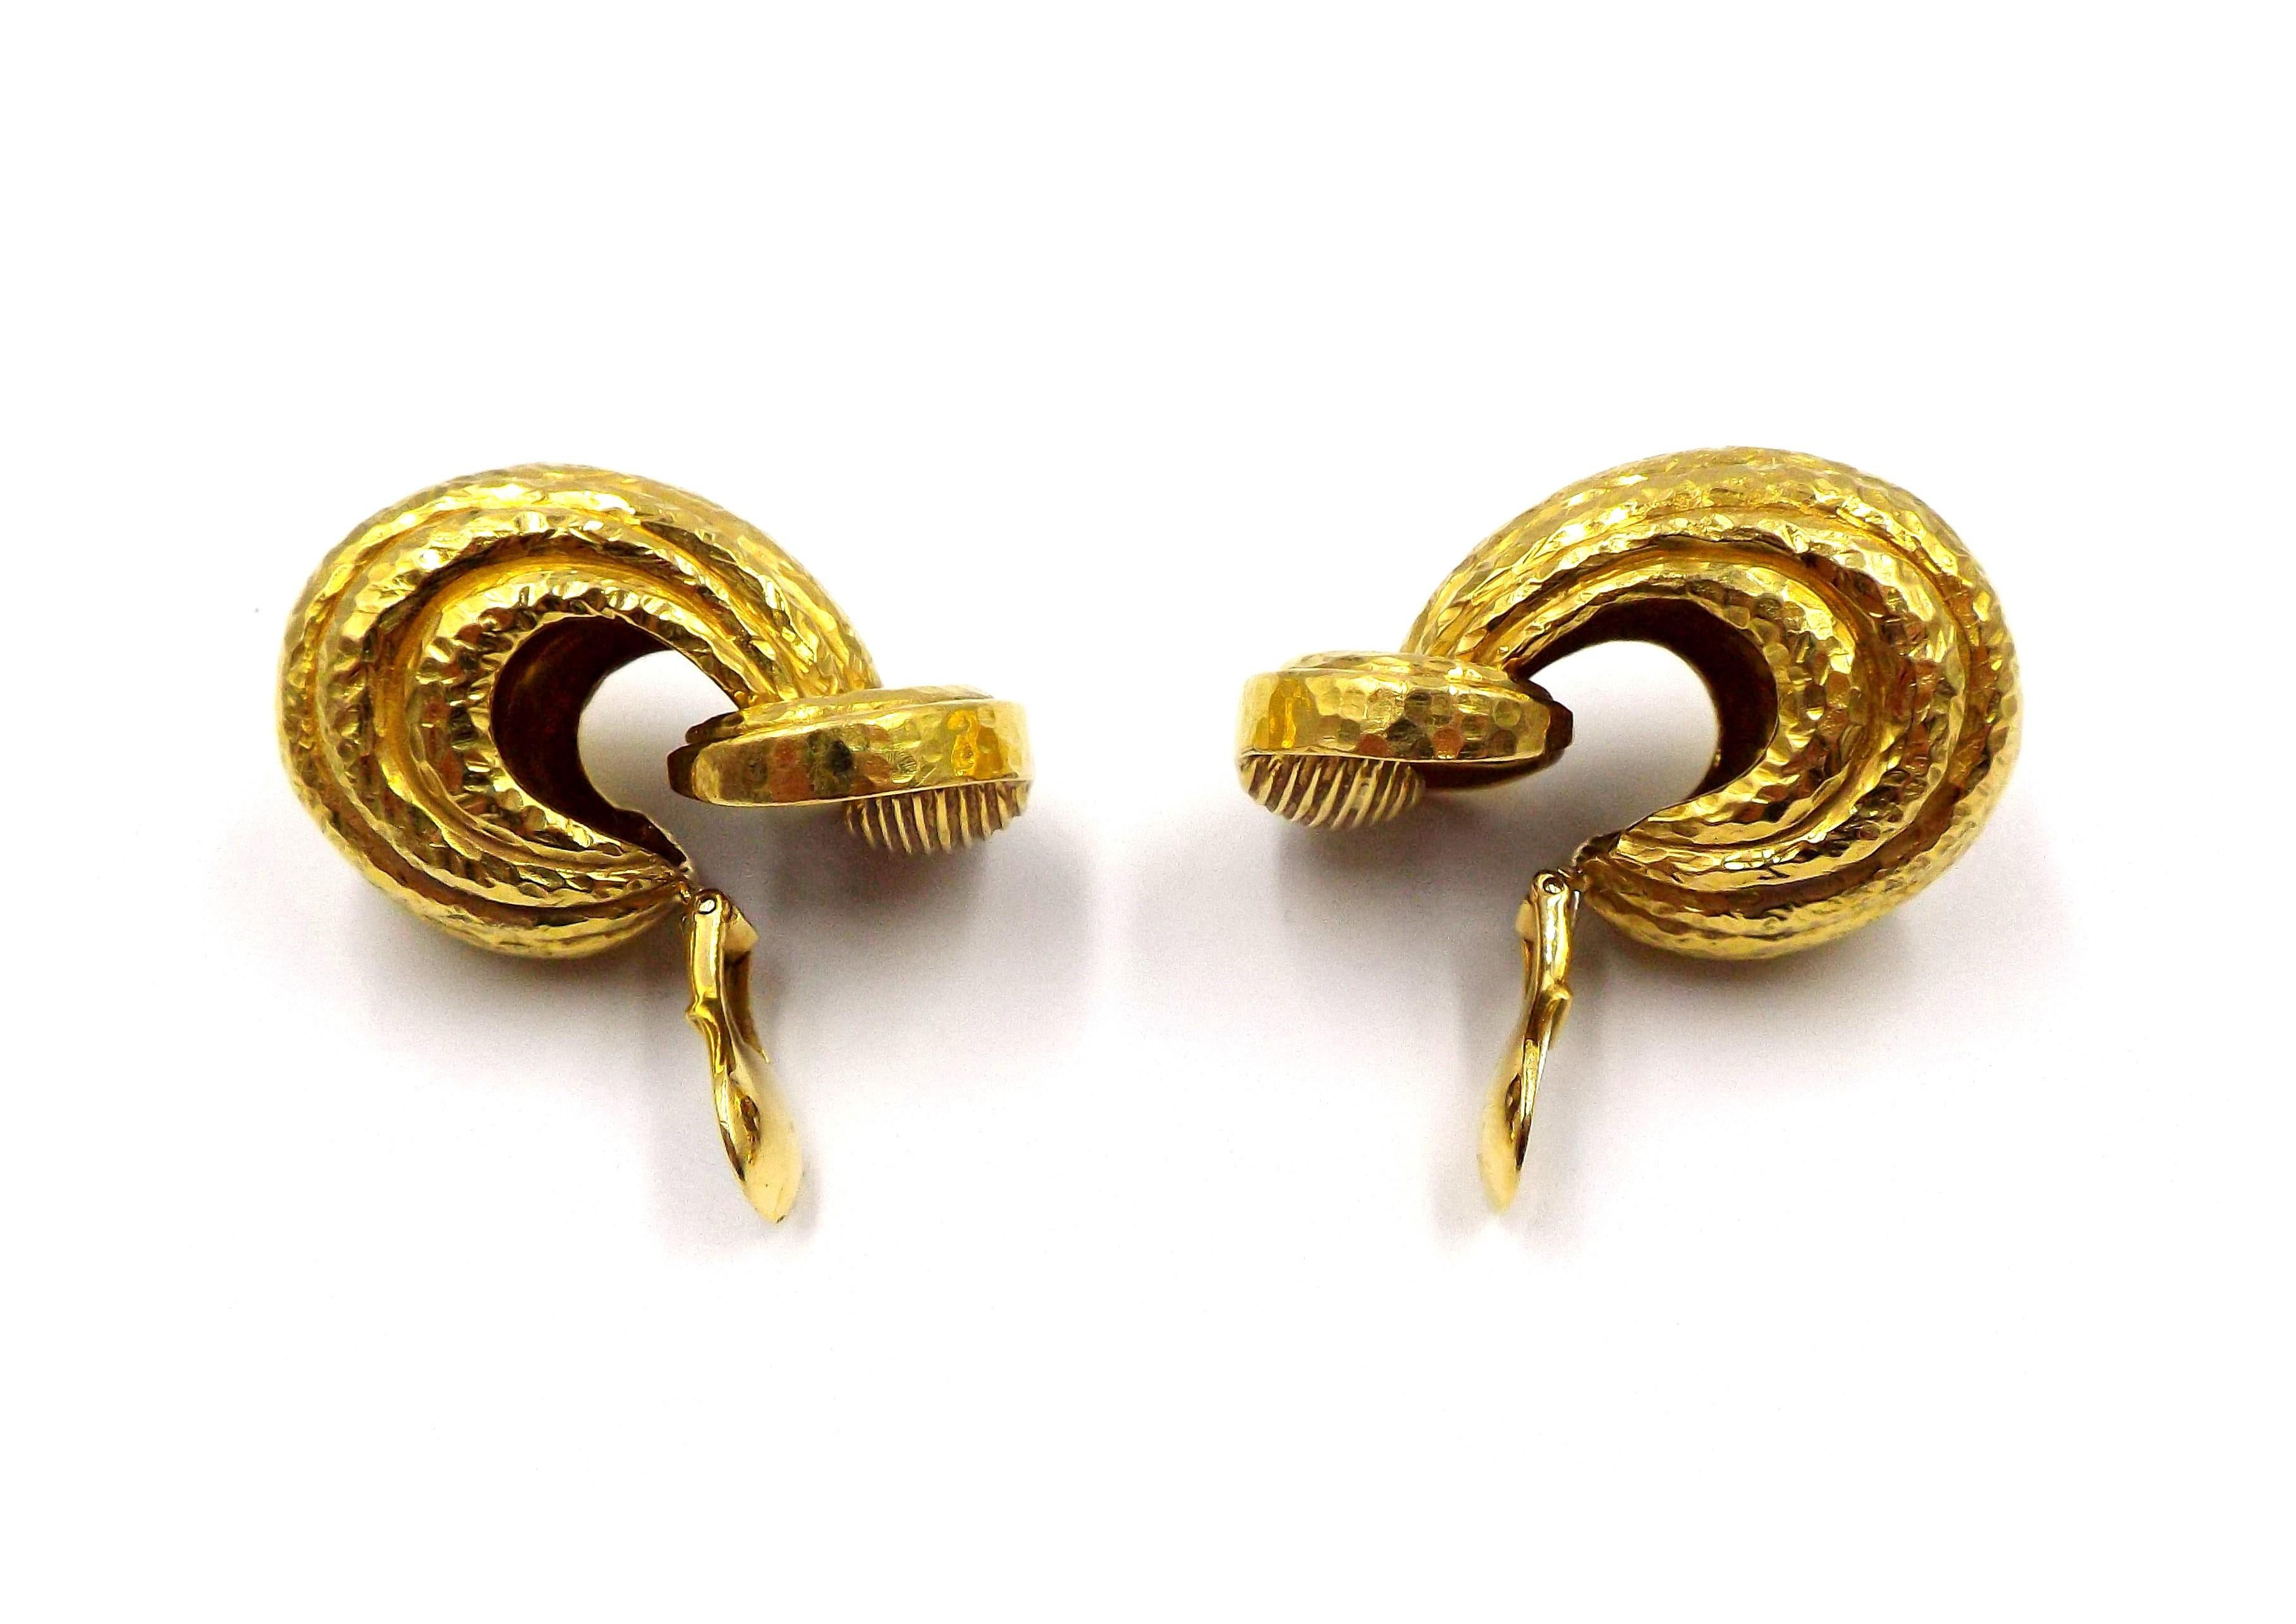 Pair of large 18k yellow gold doorknocker earrings by David Webb. Earrings are 36mm x 20mm. Marked Webb 18k. Weight - 46.7 grams.